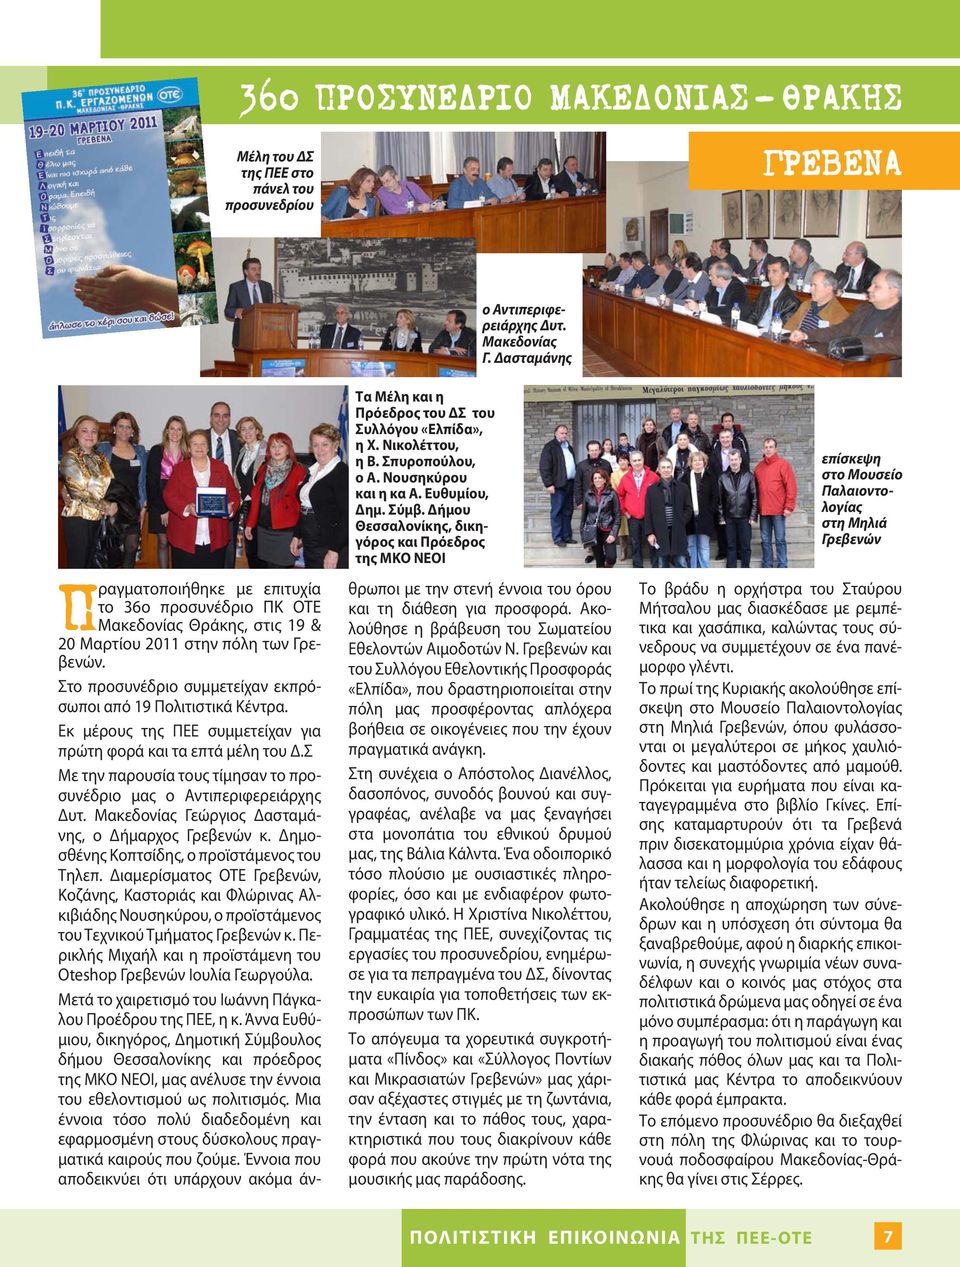 Δήμου Θεσσαλονίκης, δικηγόρος και Πρόεδρος της ΜΚΟ ΝΕΟΙ Πραγματοποιήθηκε με επιτυχία το 36ο προσυνέδριο ΠΚ ΟΤΕ Μακεδονίας Θράκης, στις 19 & 20 Μαρτίου 2011 στην πόλη των Γρεβενών.